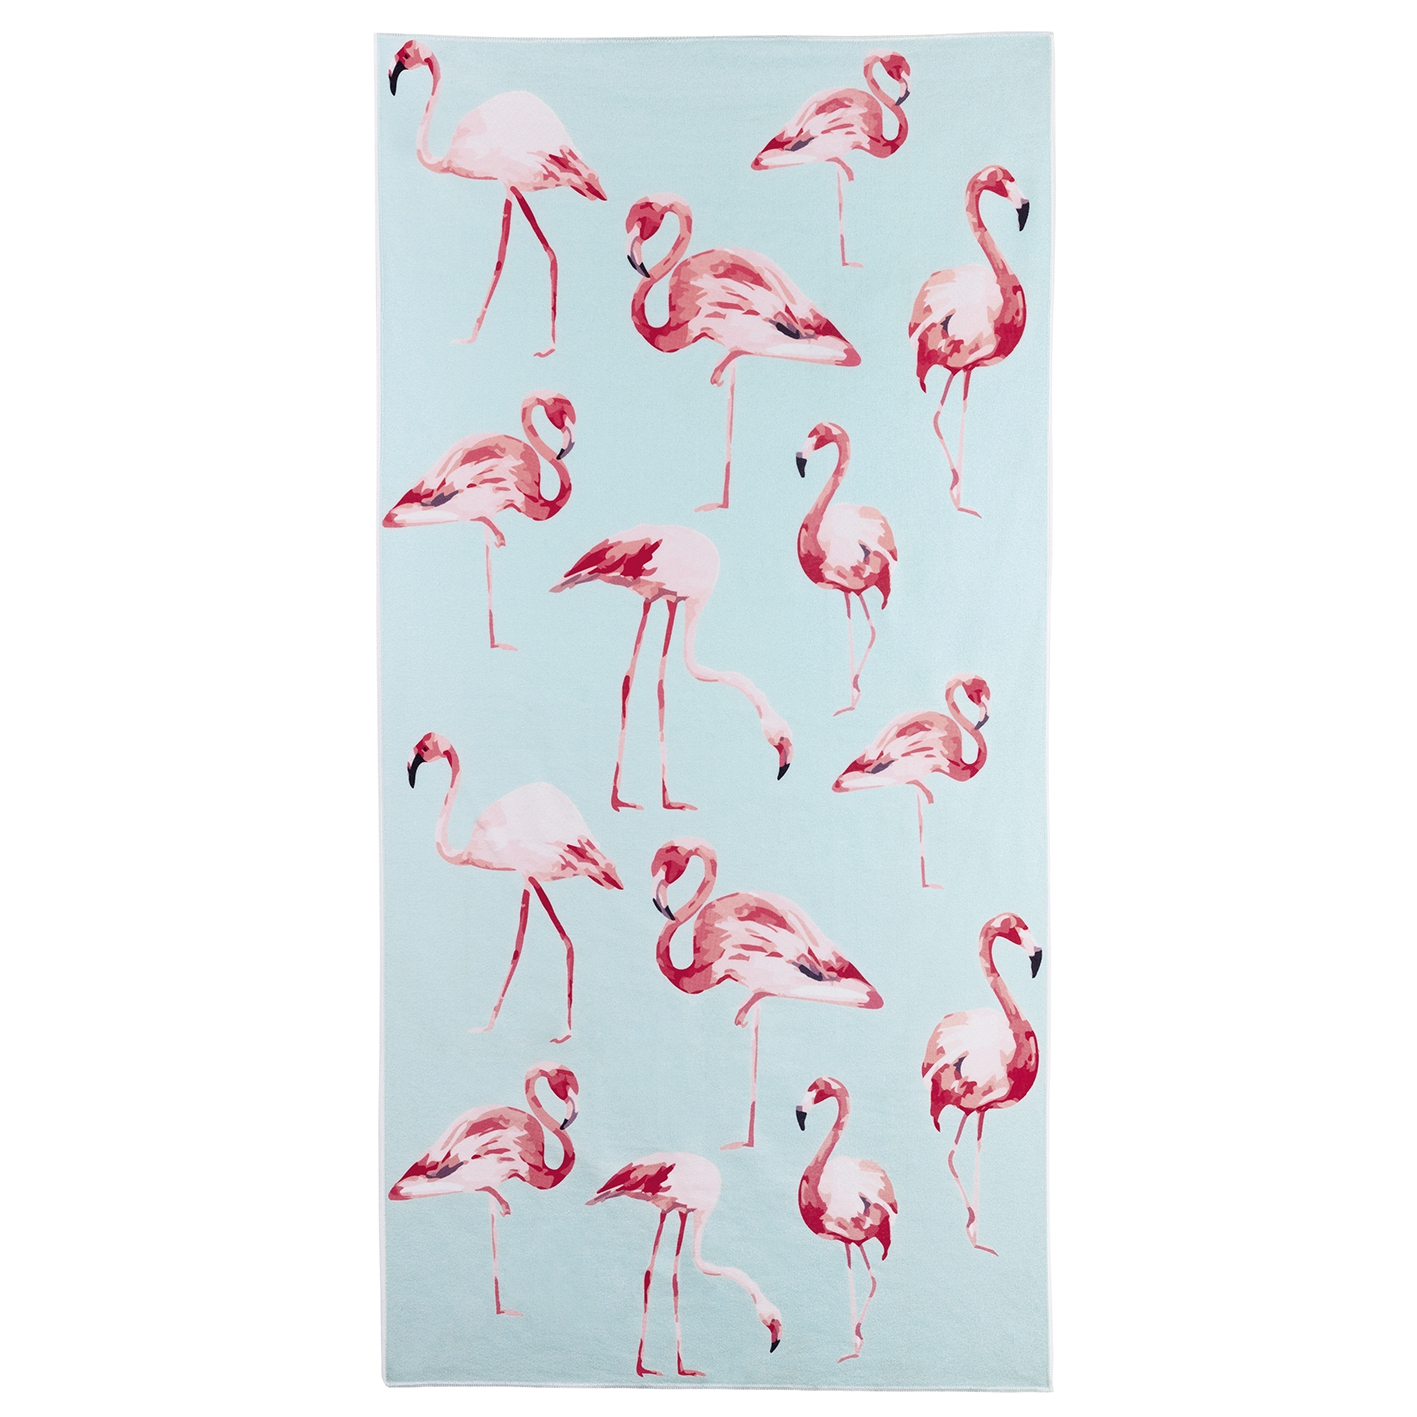 Duschtuch Badetuch Handtuch Strandtuch Flamingo 70 x 140cm